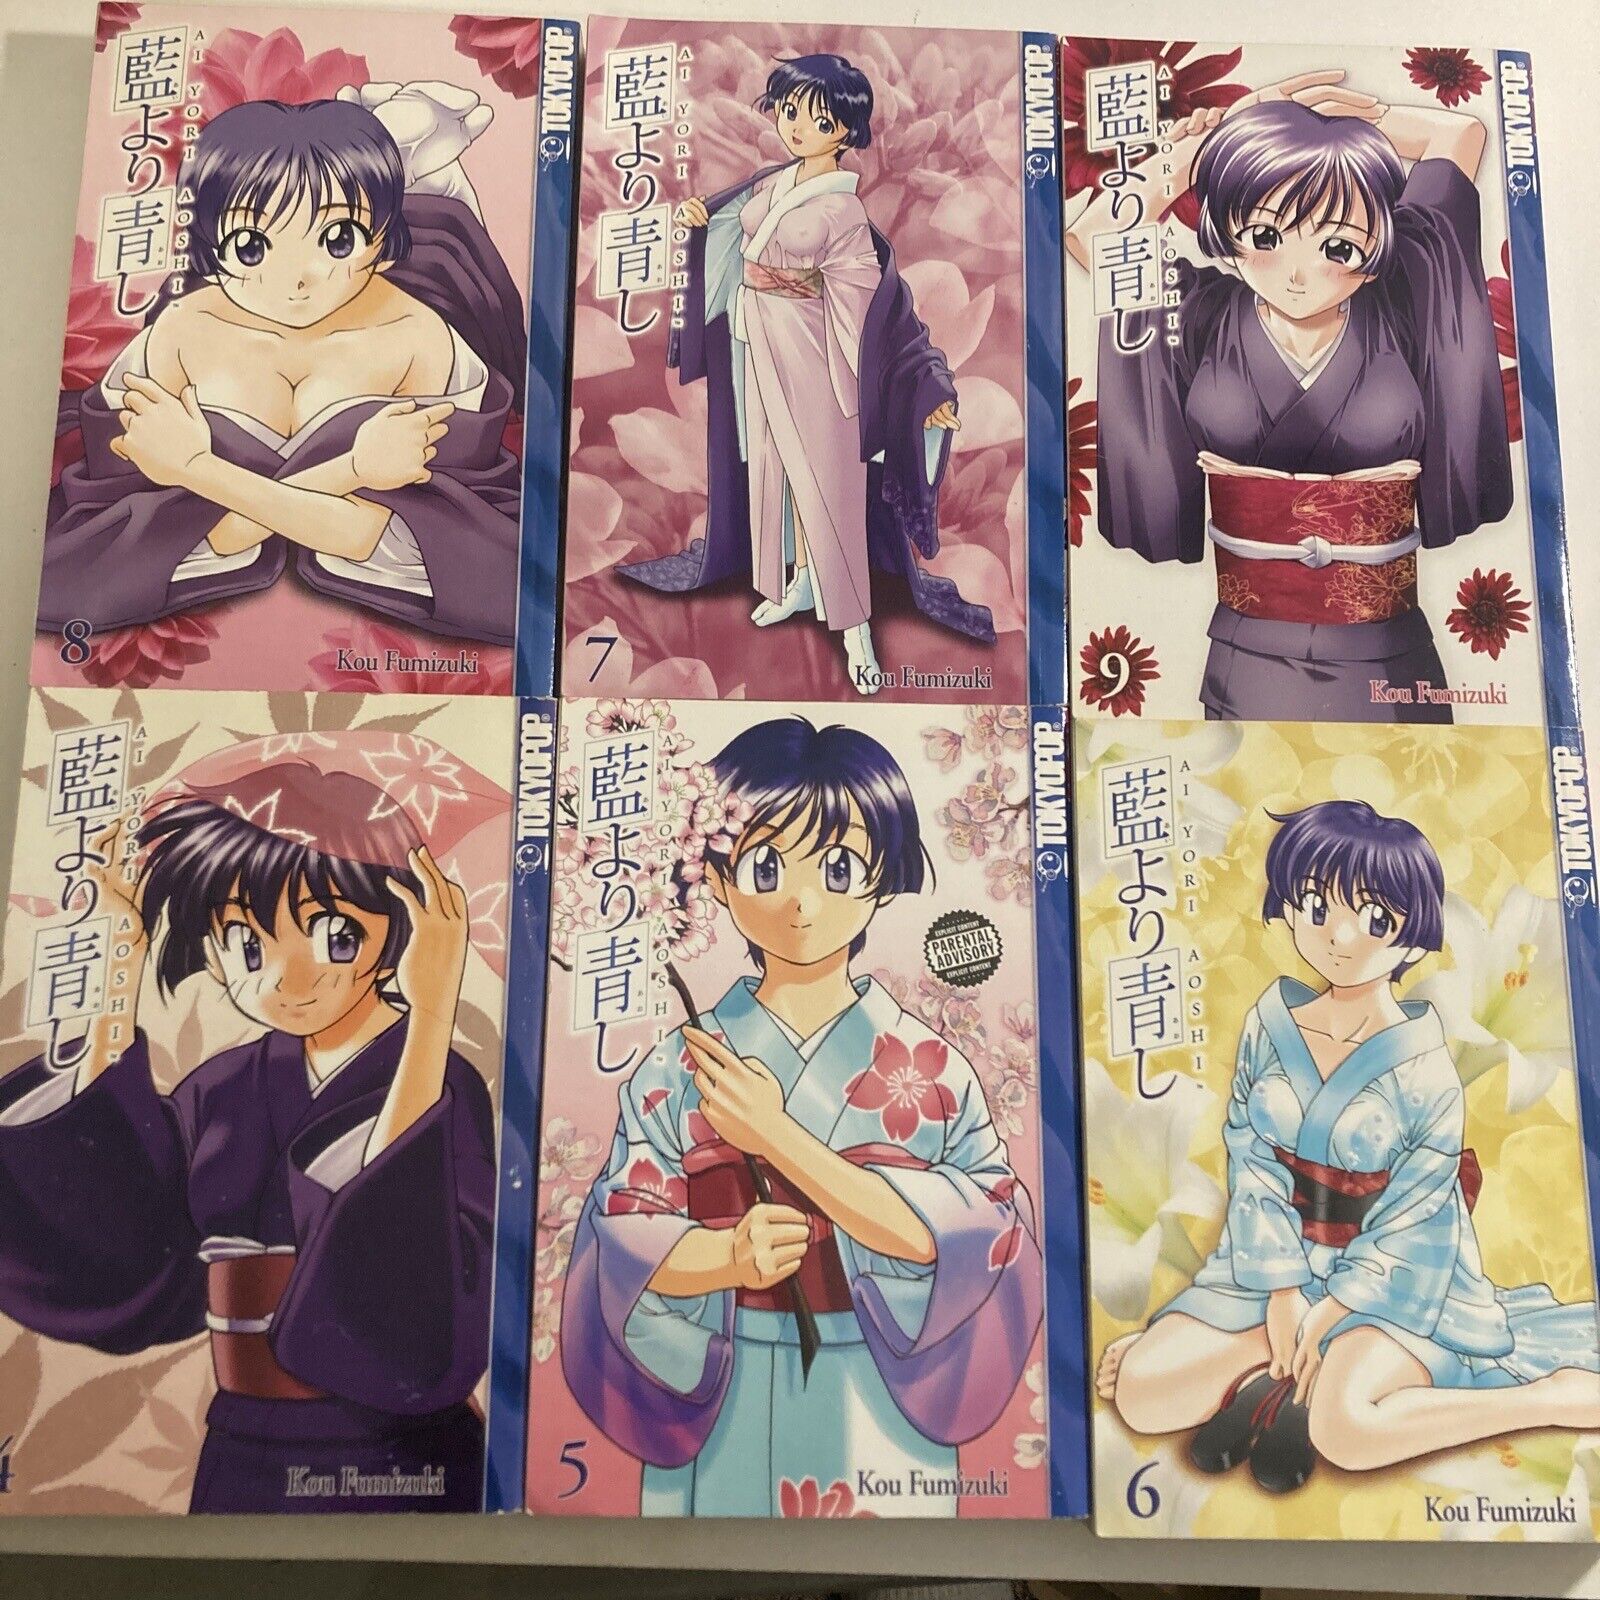 Ai Yori Aoshi By Kou Fumizuki Manga Volumes 4-9English TokyoPop English